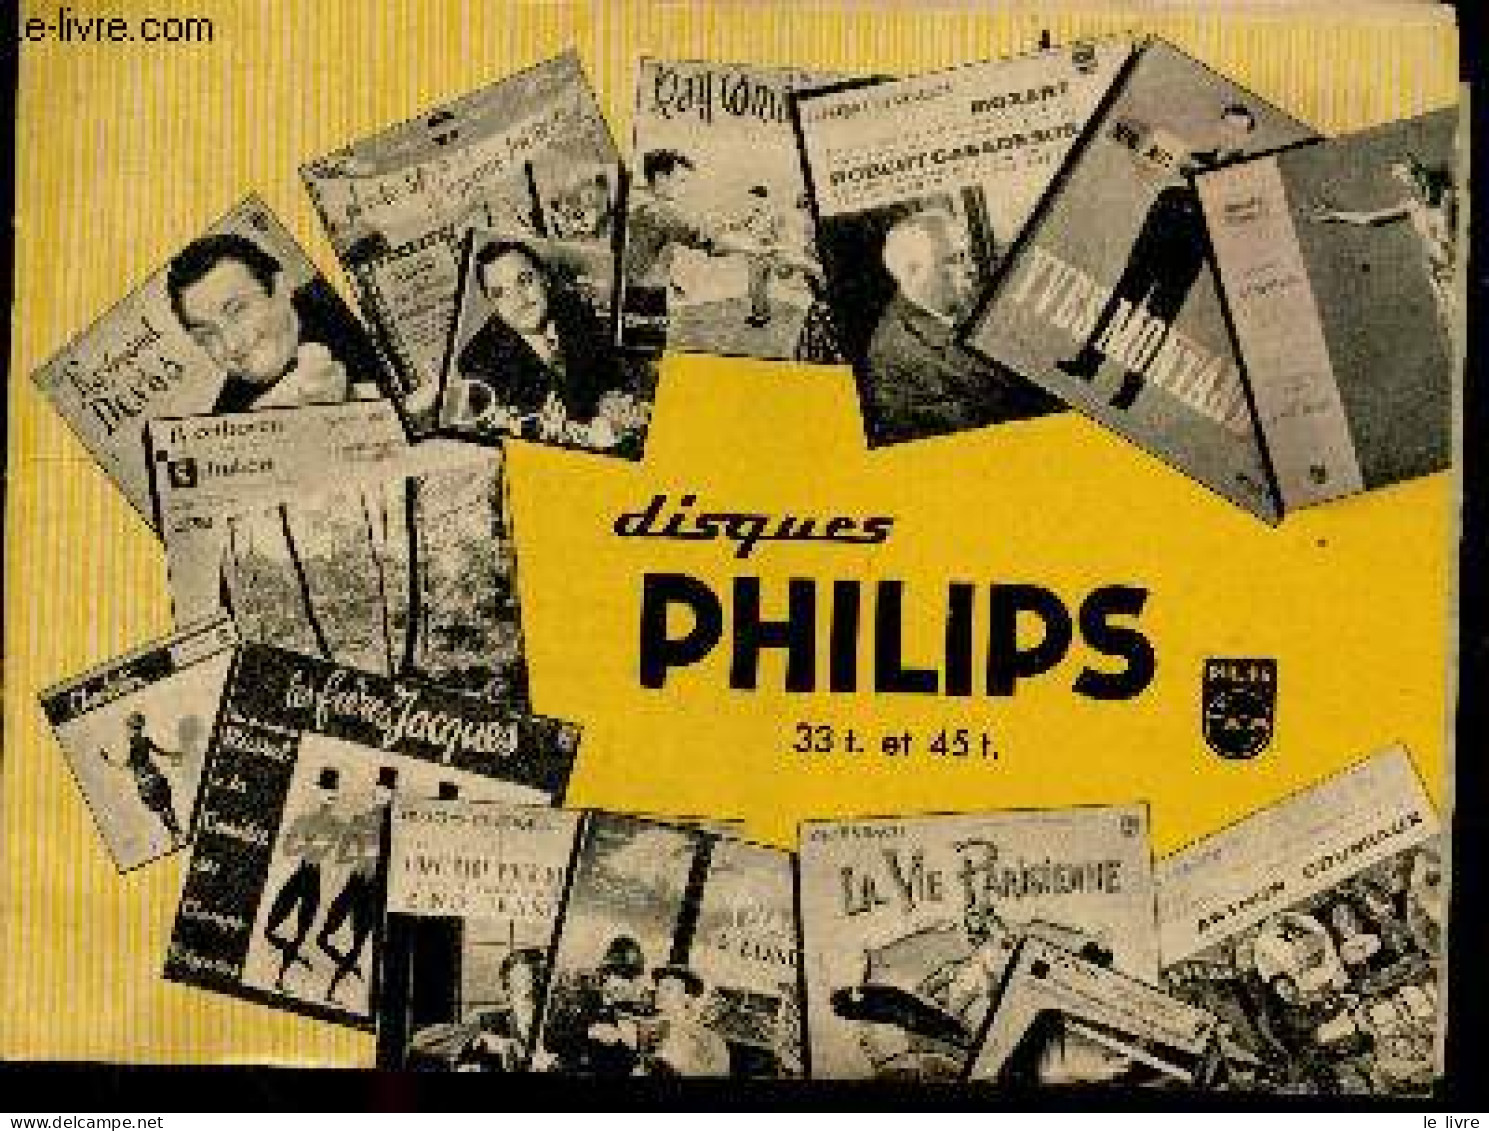 Disques Philips 33T. Et 45T. - Livret Publicitaire - Classiques Pour Tous, Operettes, Theatre Pour Tous, Jazz, Opera, Ch - Musik